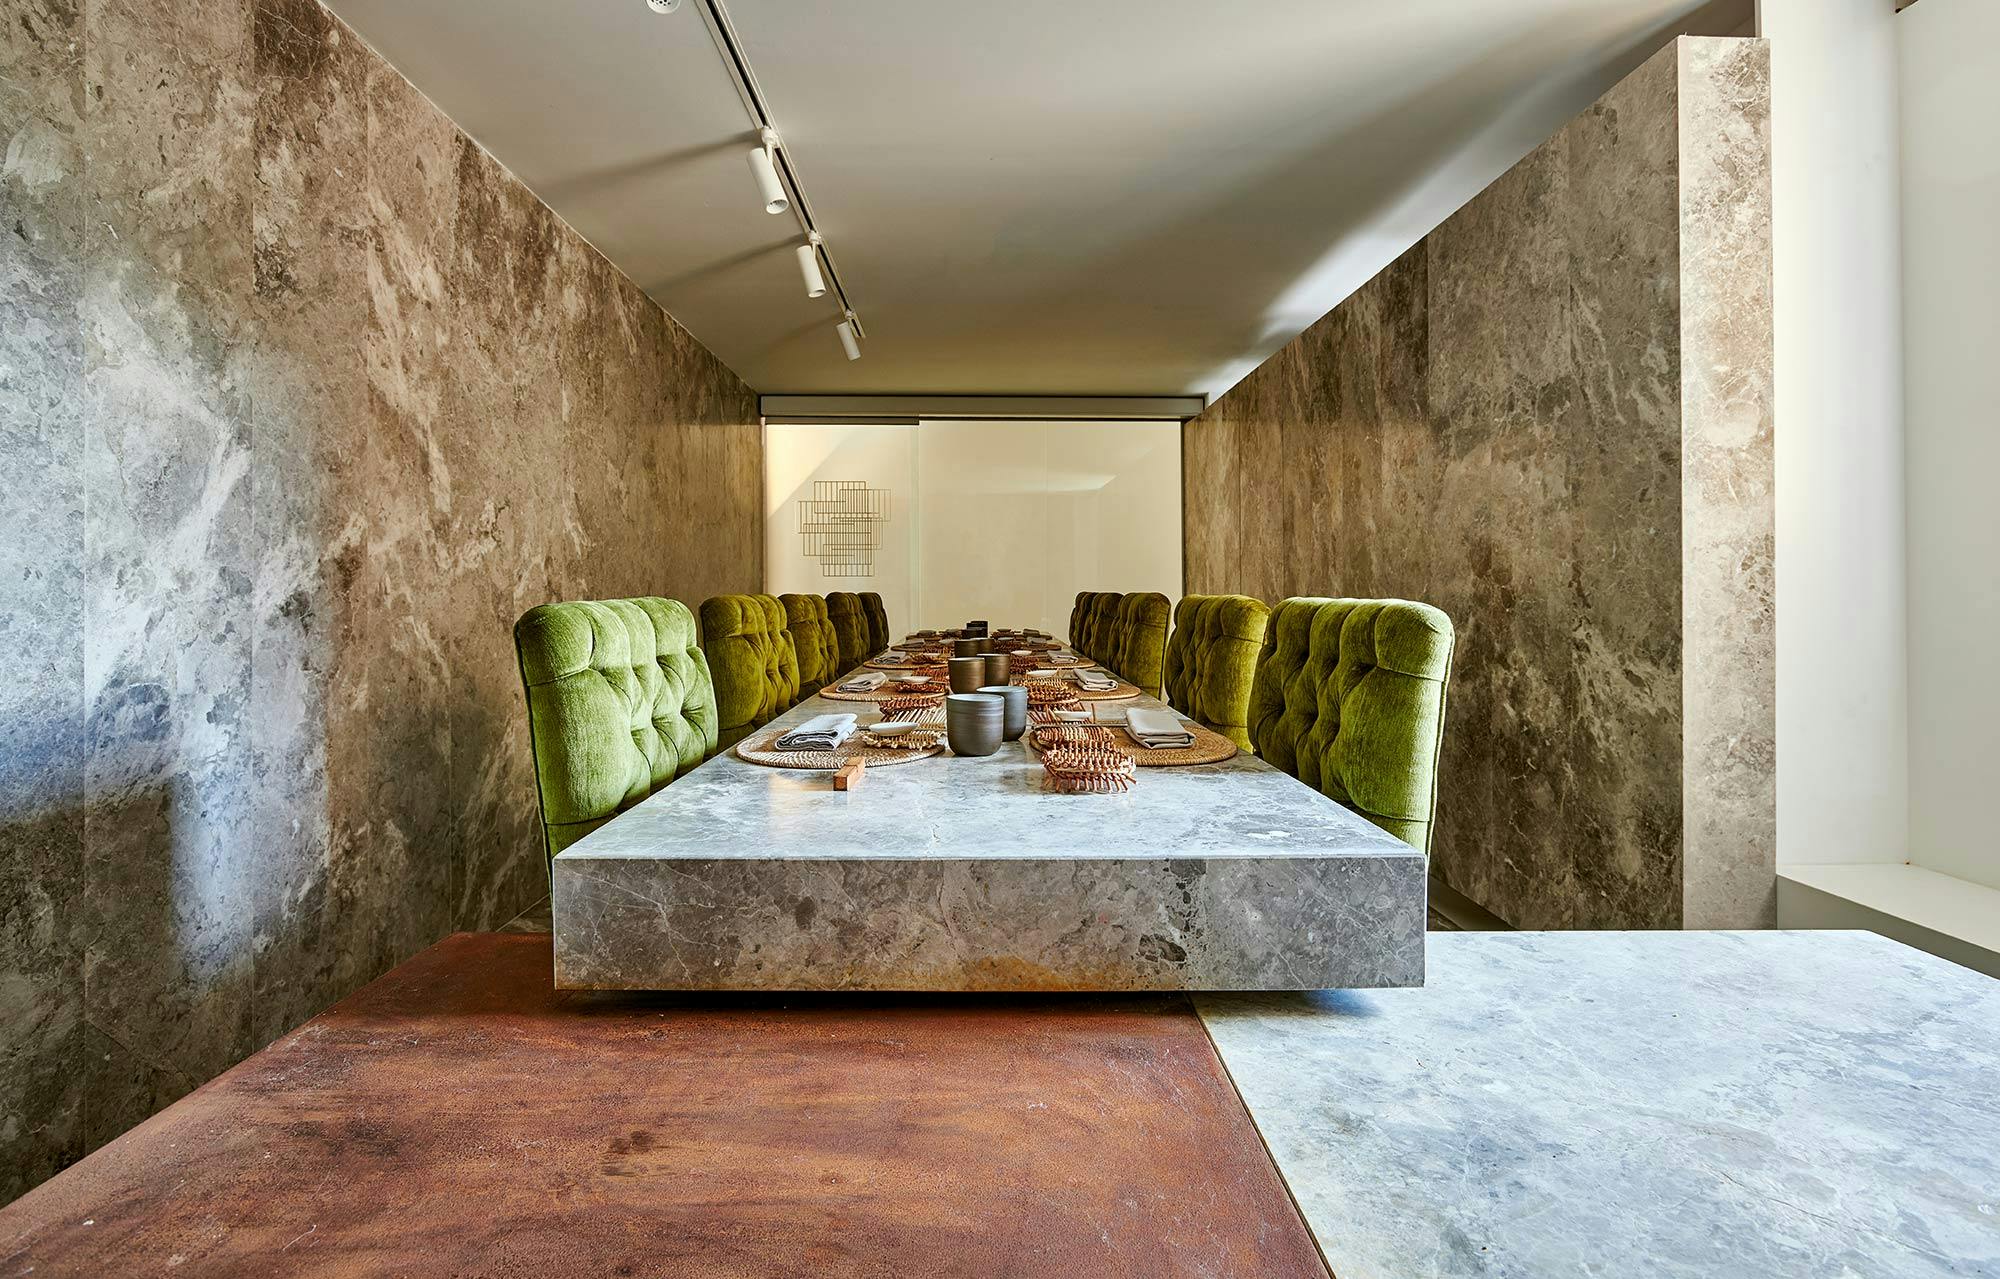 Numero immagine 32 della sezione corrente di {{Two restaurants with a shared kitchen achieve visual continuity thanks to Dekton}} di Cosentino Italia